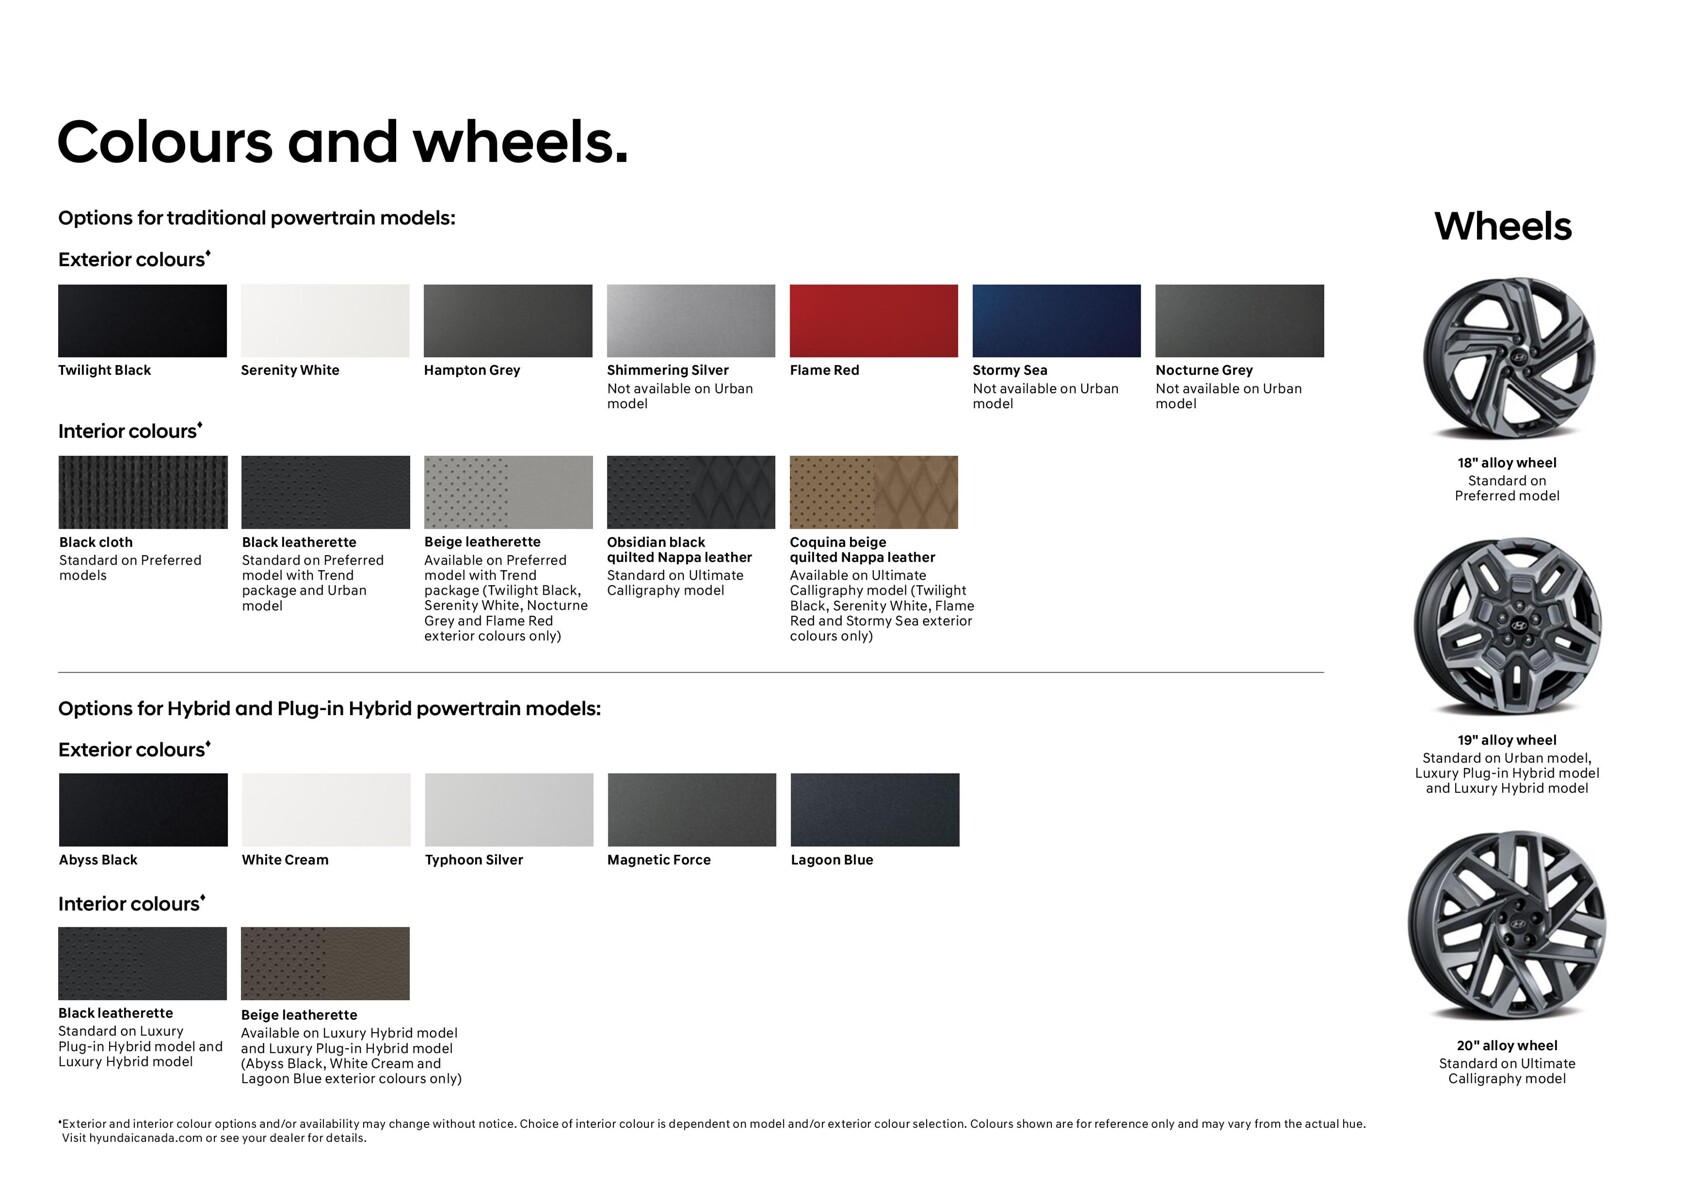 Opções de cores e rodas para modelos de powertrain tradicionais e híbridos da Hyundai